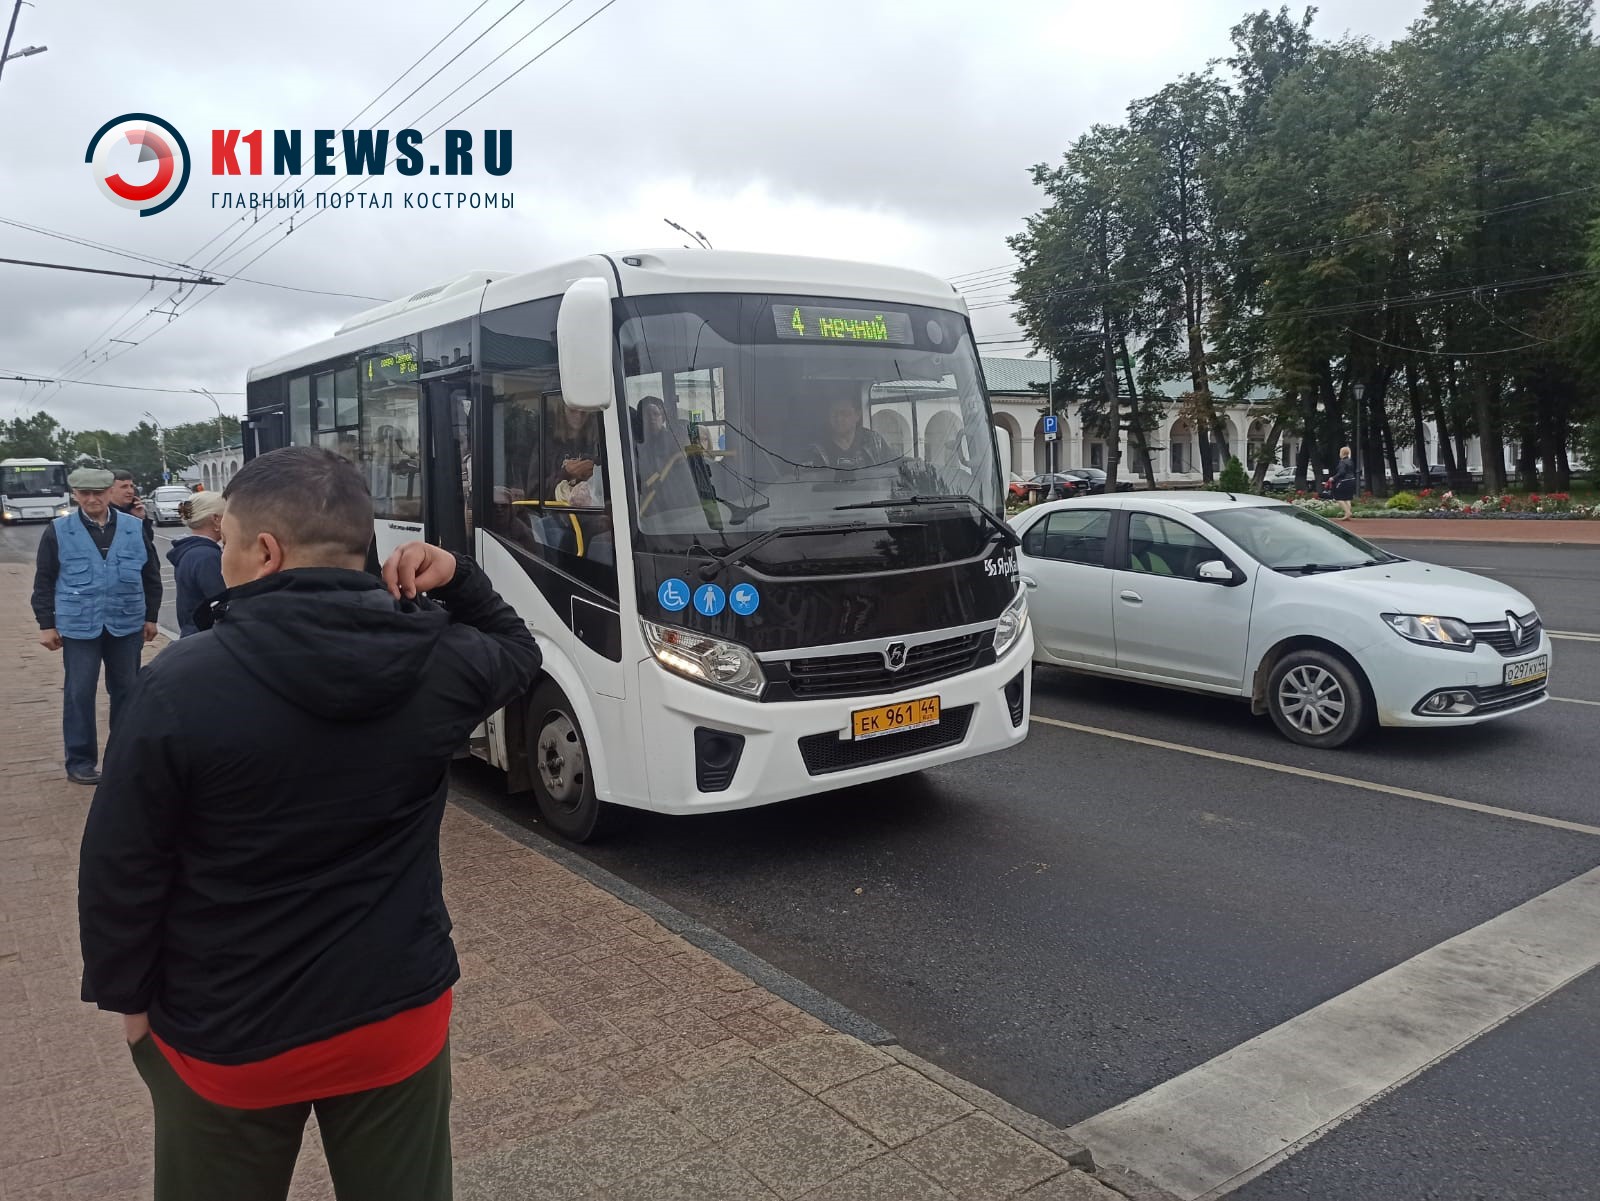 Два маршрута автобусов временно изменят схему движения в Костроме